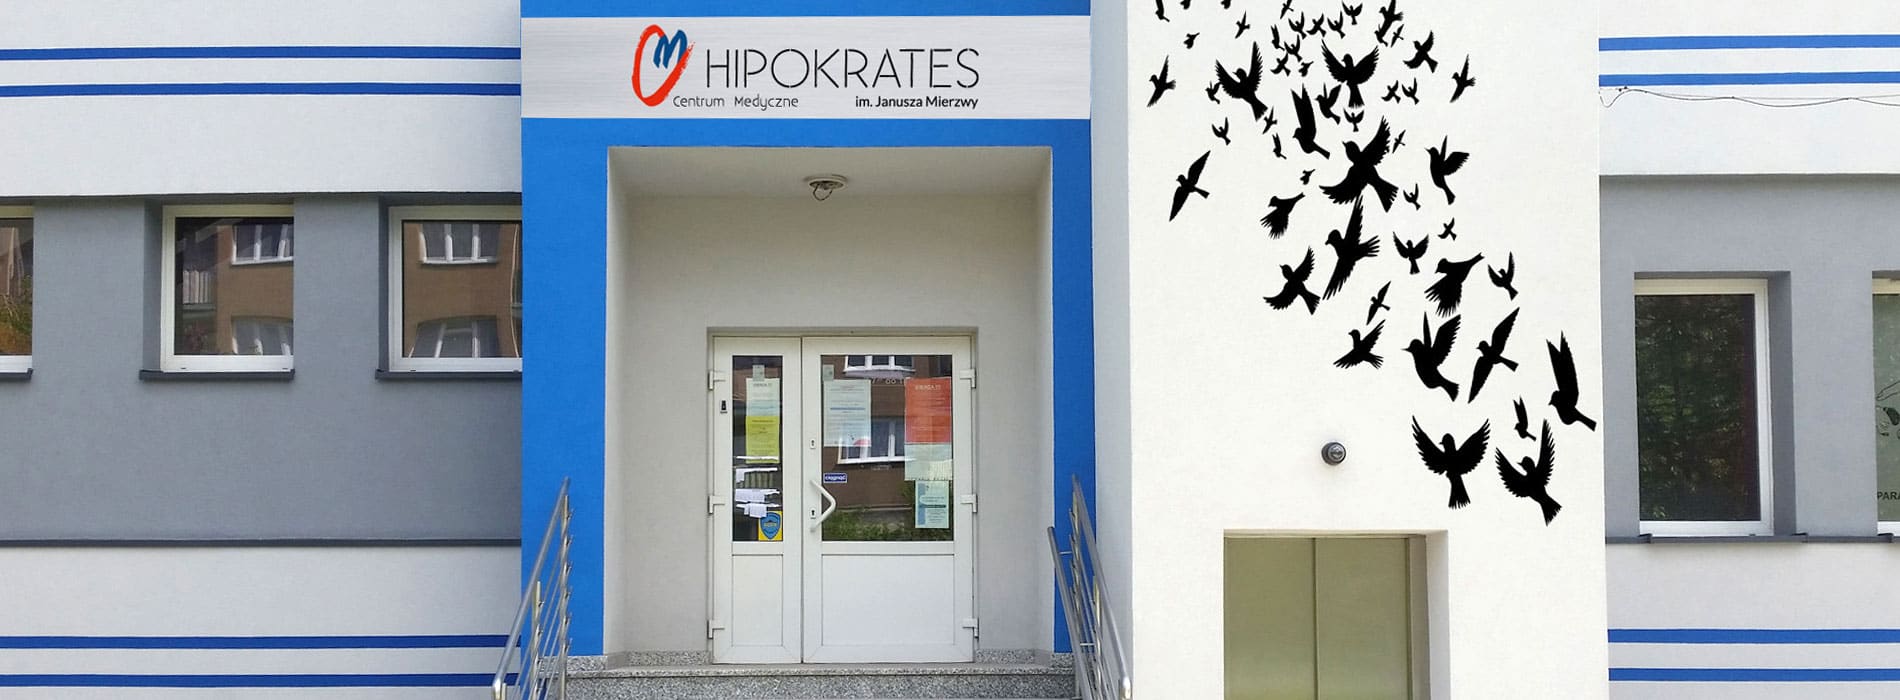 09-hipokrates-galeria